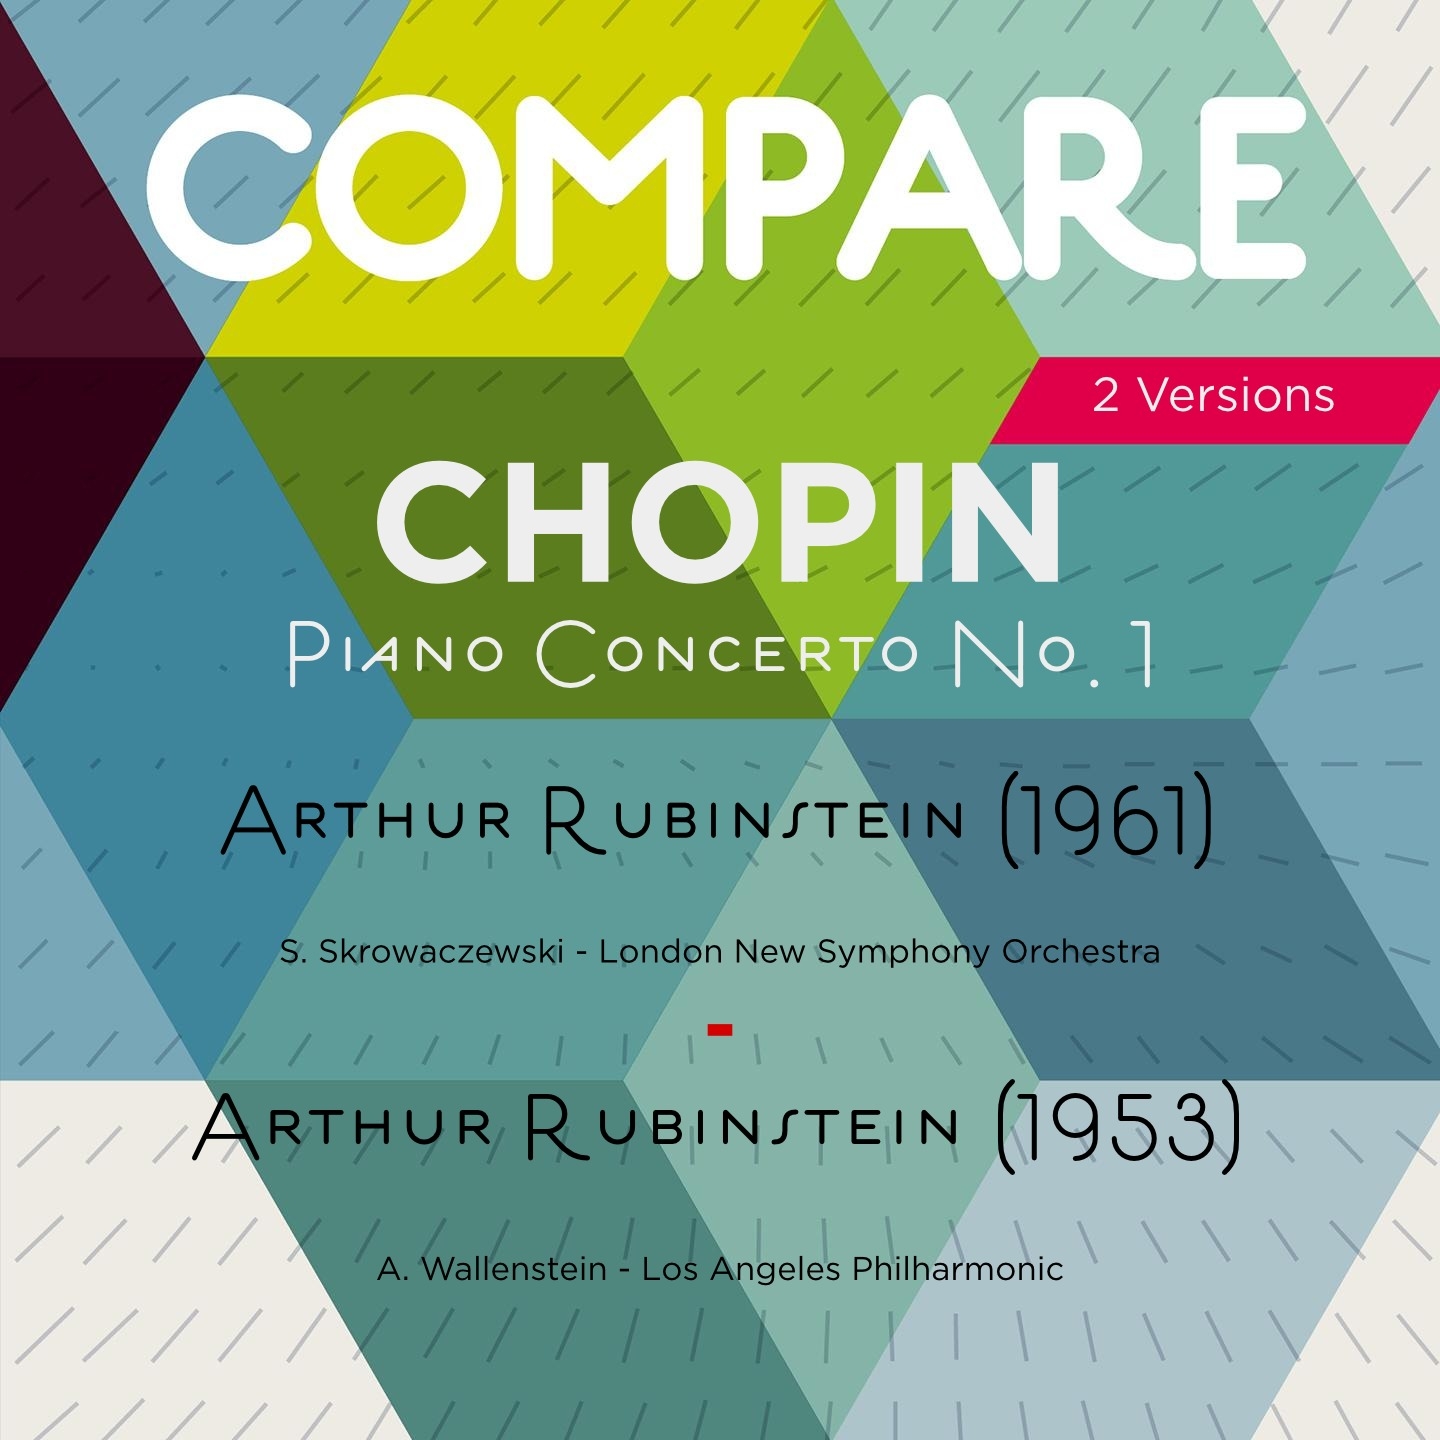 Chopin: Piano Concerto No. 1, Arthur Rubinstein vs. Arthur Rubinstein